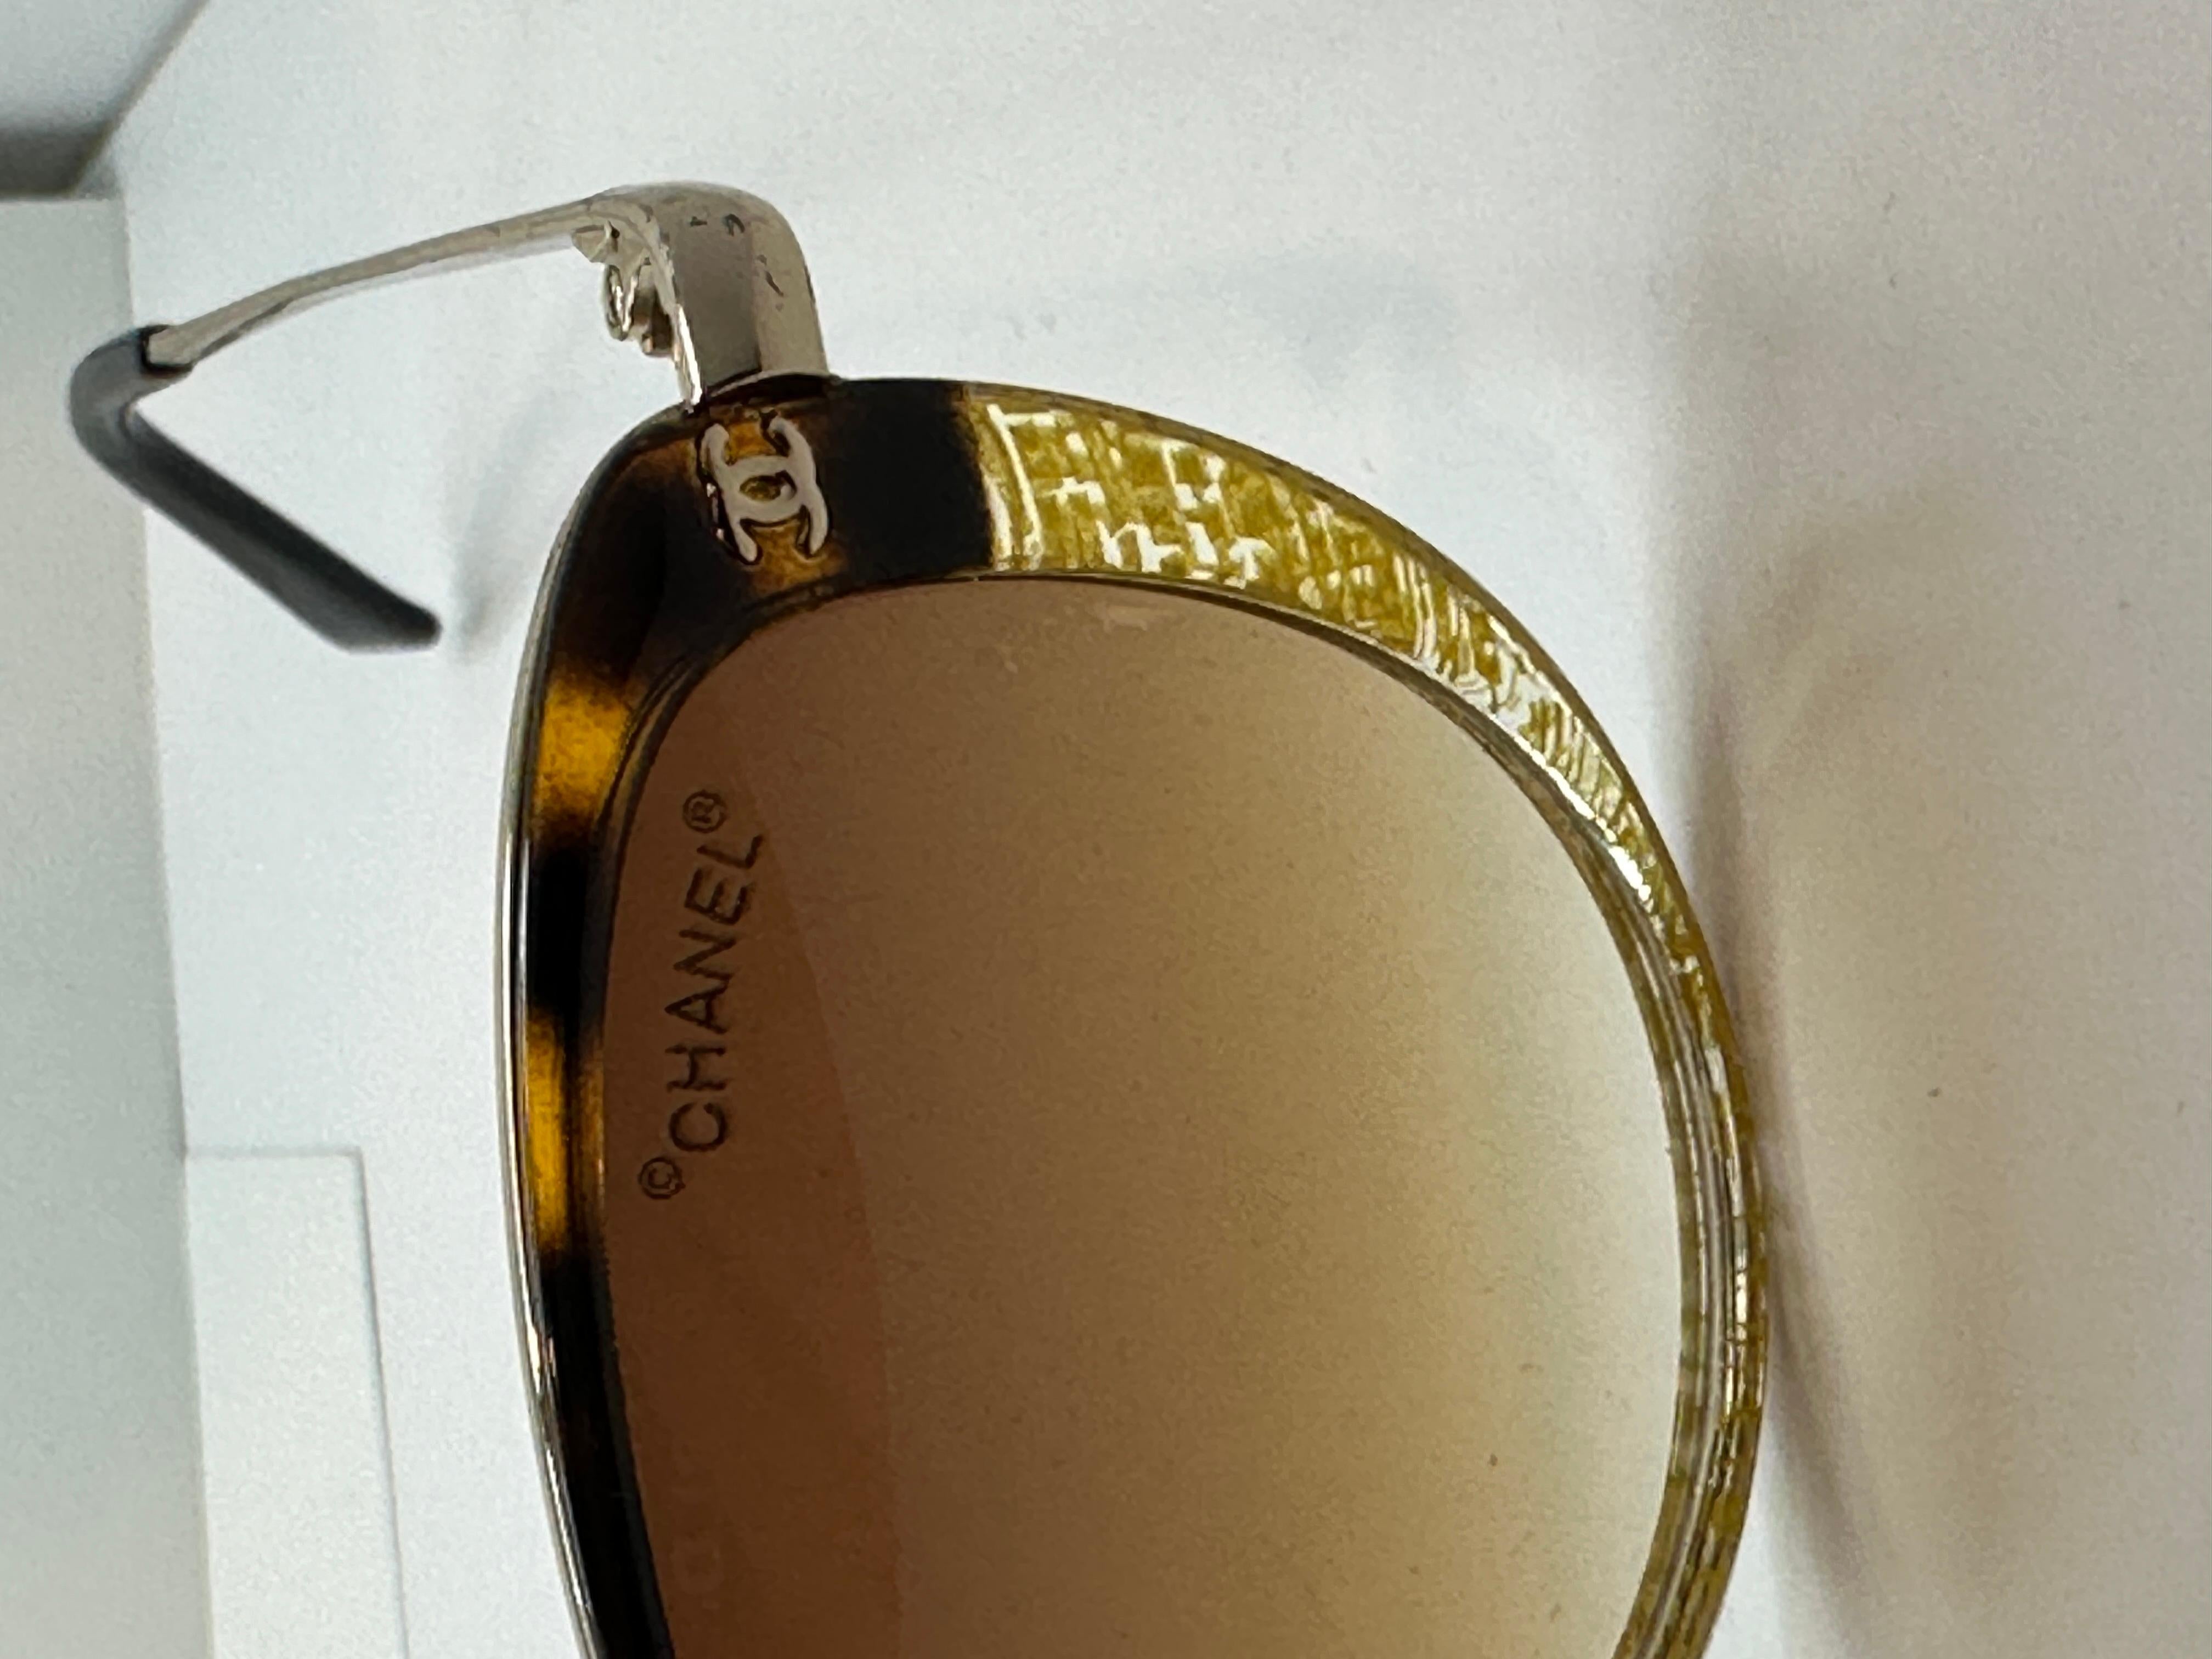 Chanel Sonnenbrille in abstraktem Gold und Schildpatt mit vergoldeter Hardware. Die Enden des Arms sind mit schwarzem Lucit verkleidet. Die Vorderseite misst 5 5/8 Zoll in der Breite, Höhe misst 1 7/8 Zoll, und die Arme sind 5 1/4 Zoll in der Länge.